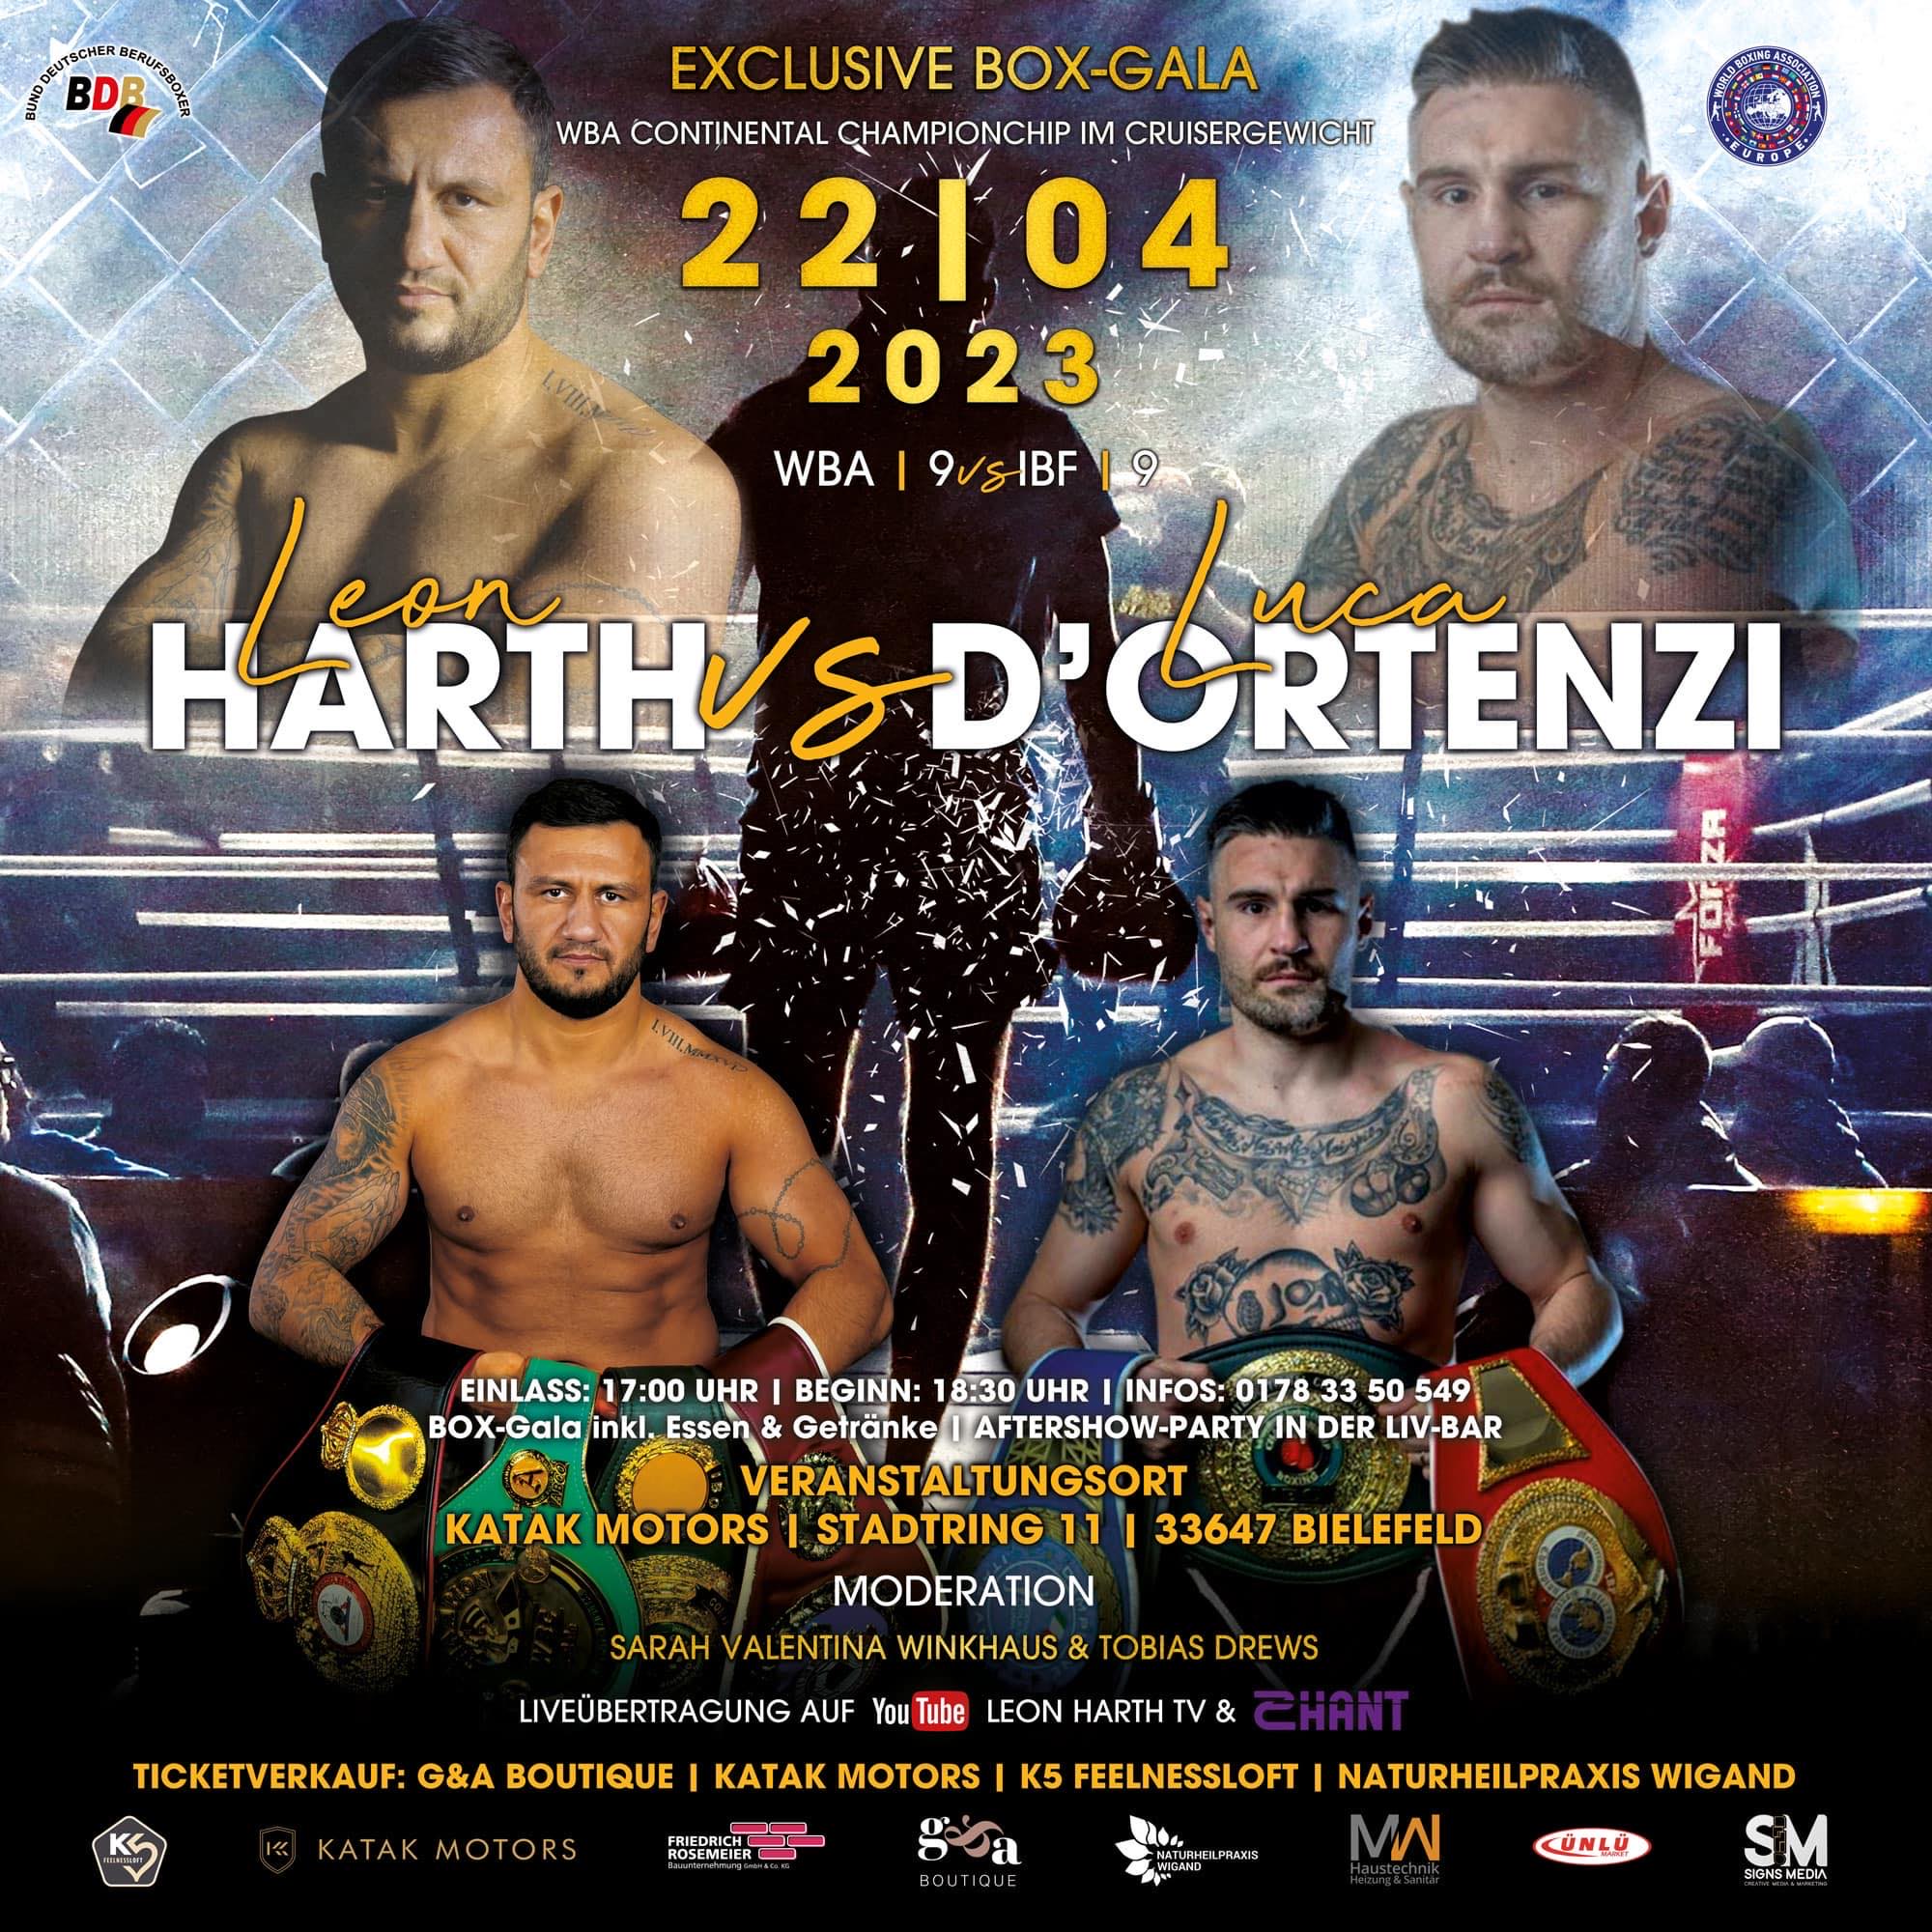 Il 22 aprile a Bielefeld (Germania) D'Ortenzi vs Hart per il titolo WBA continentale Cruiser